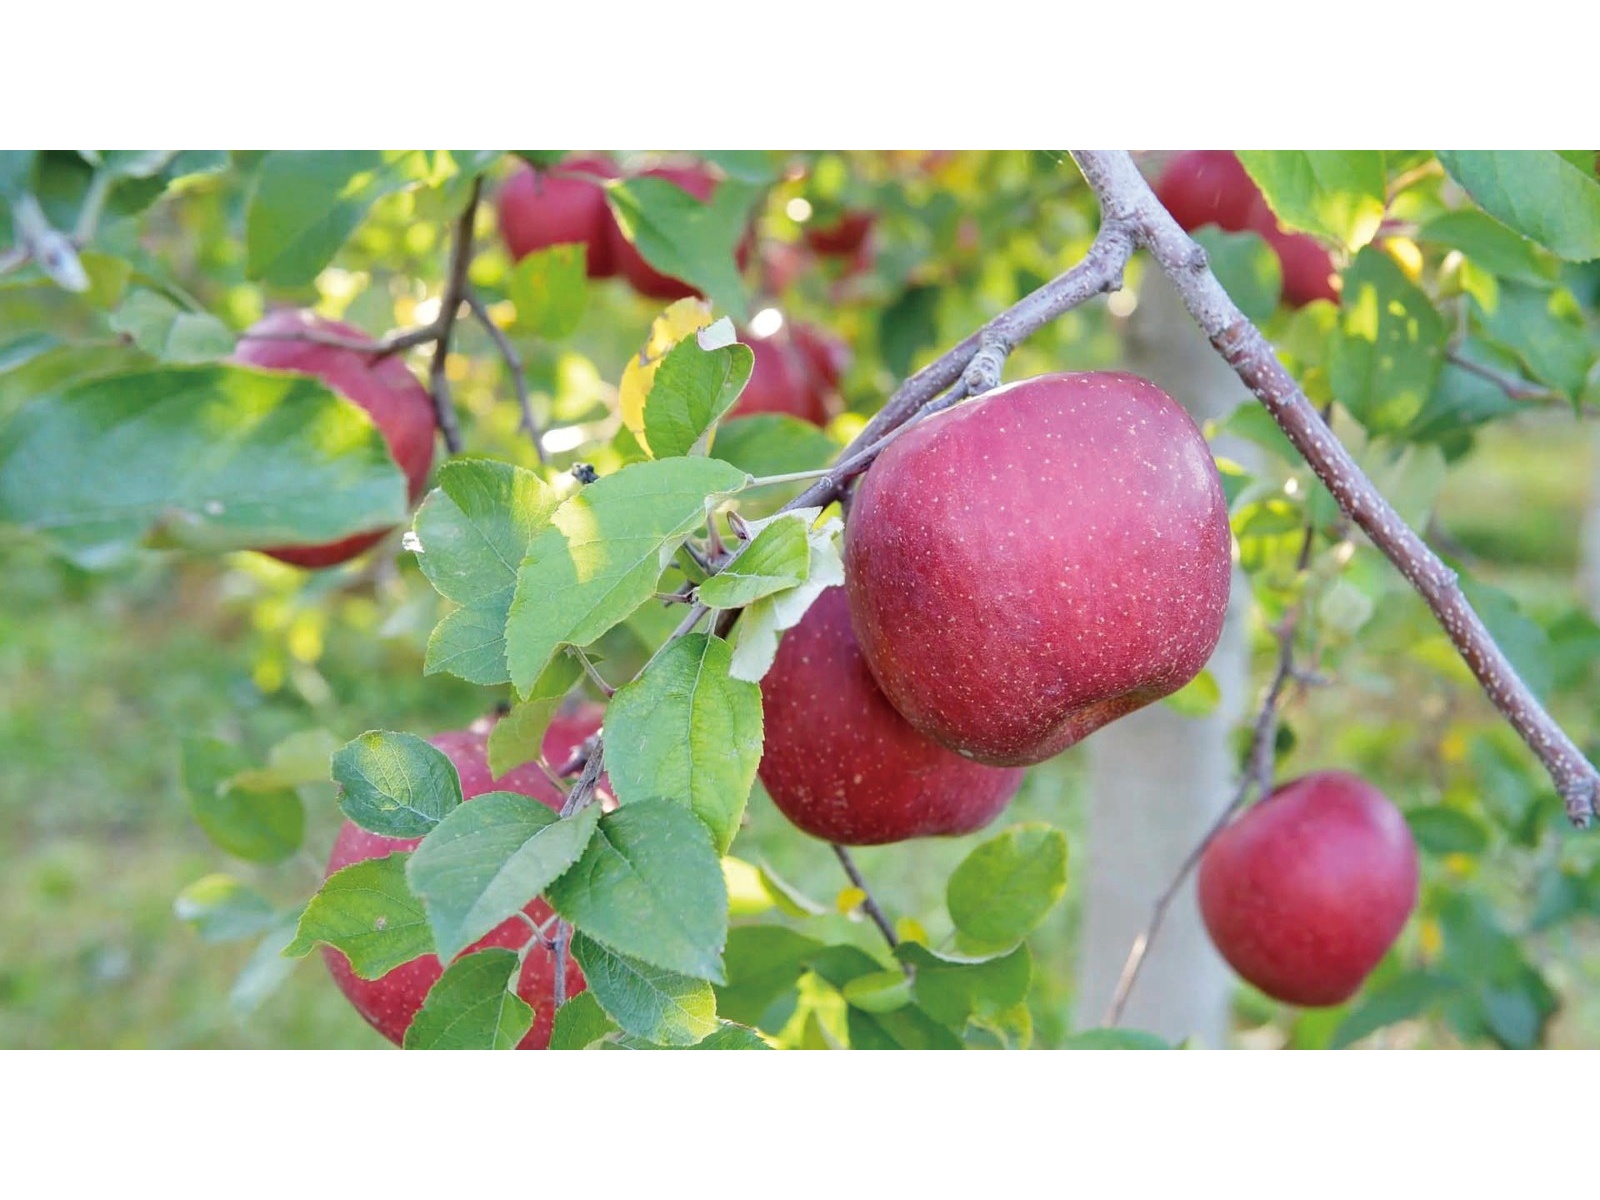 青森県りんごジュース シャイニー果実のおもてなし ゆずりん 200ml| コープこうべネット